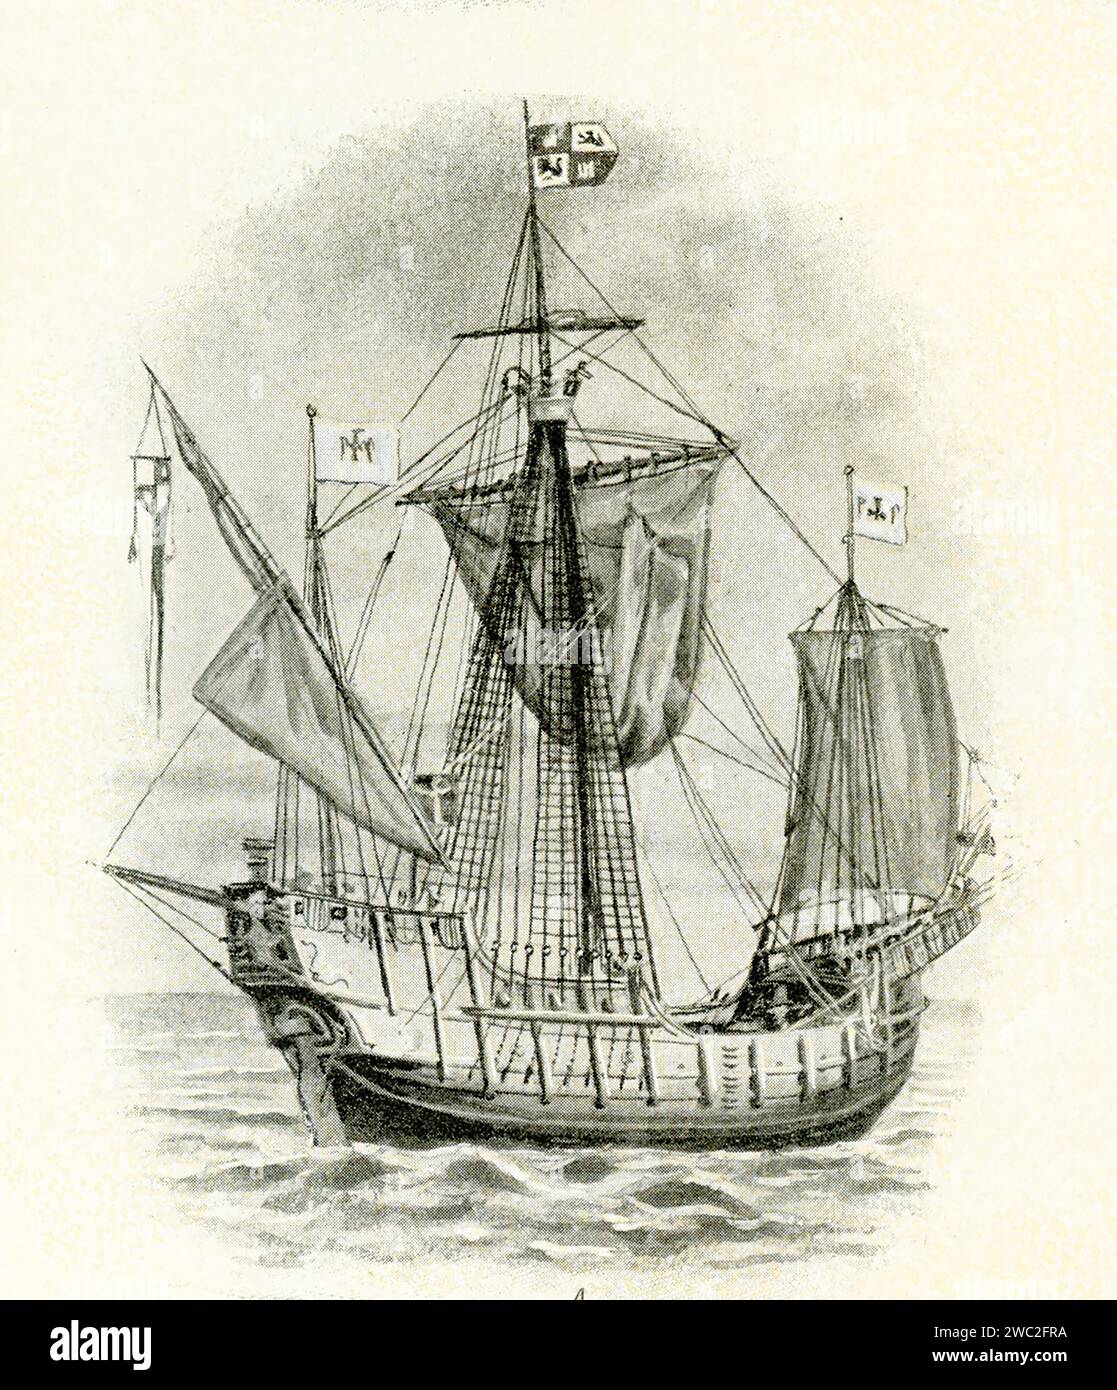 Karavell aus der Zeit von Christoph Kolumbus 15. Und 16. Jahrhundert. Die Caravel ist ein kleines manövrierfähiges Segelschiff, das vor allem im 15. Jahrhundert von den Portugiesen genutzt wurde, um entlang der westafrikanischen Küste und in den Atlantik zu erkunden. Die Lateen Segel gaben ihm Geschwindigkeit und die Kapazität, um gegen Wind zu segeln. Stockfoto